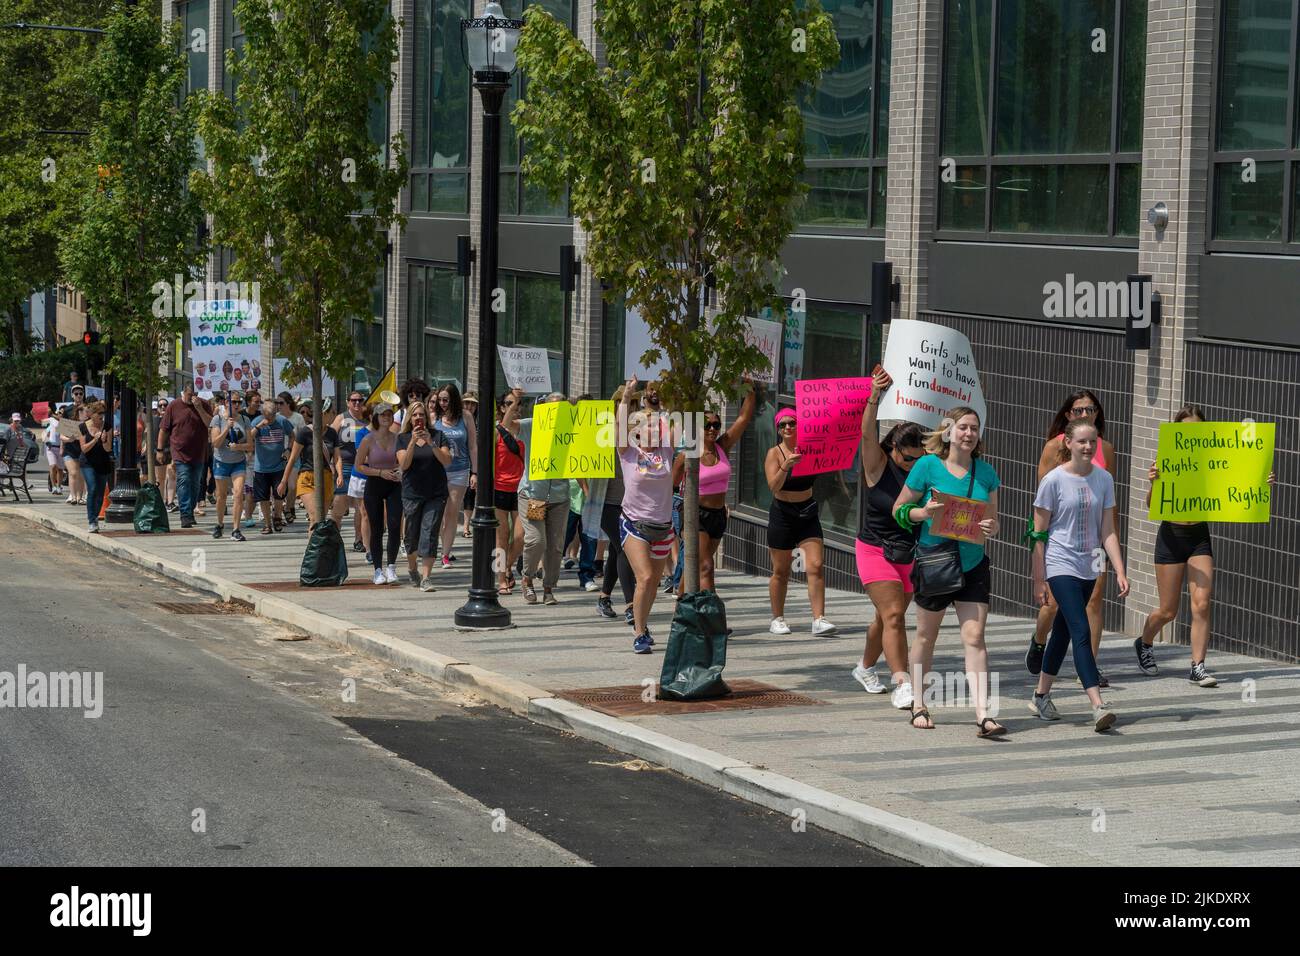 Pro Choice Women's Rights March & Rally à Philadelphie, Pennsylvanie, États-Unis, 16 juillet 2022 Banque D'Images